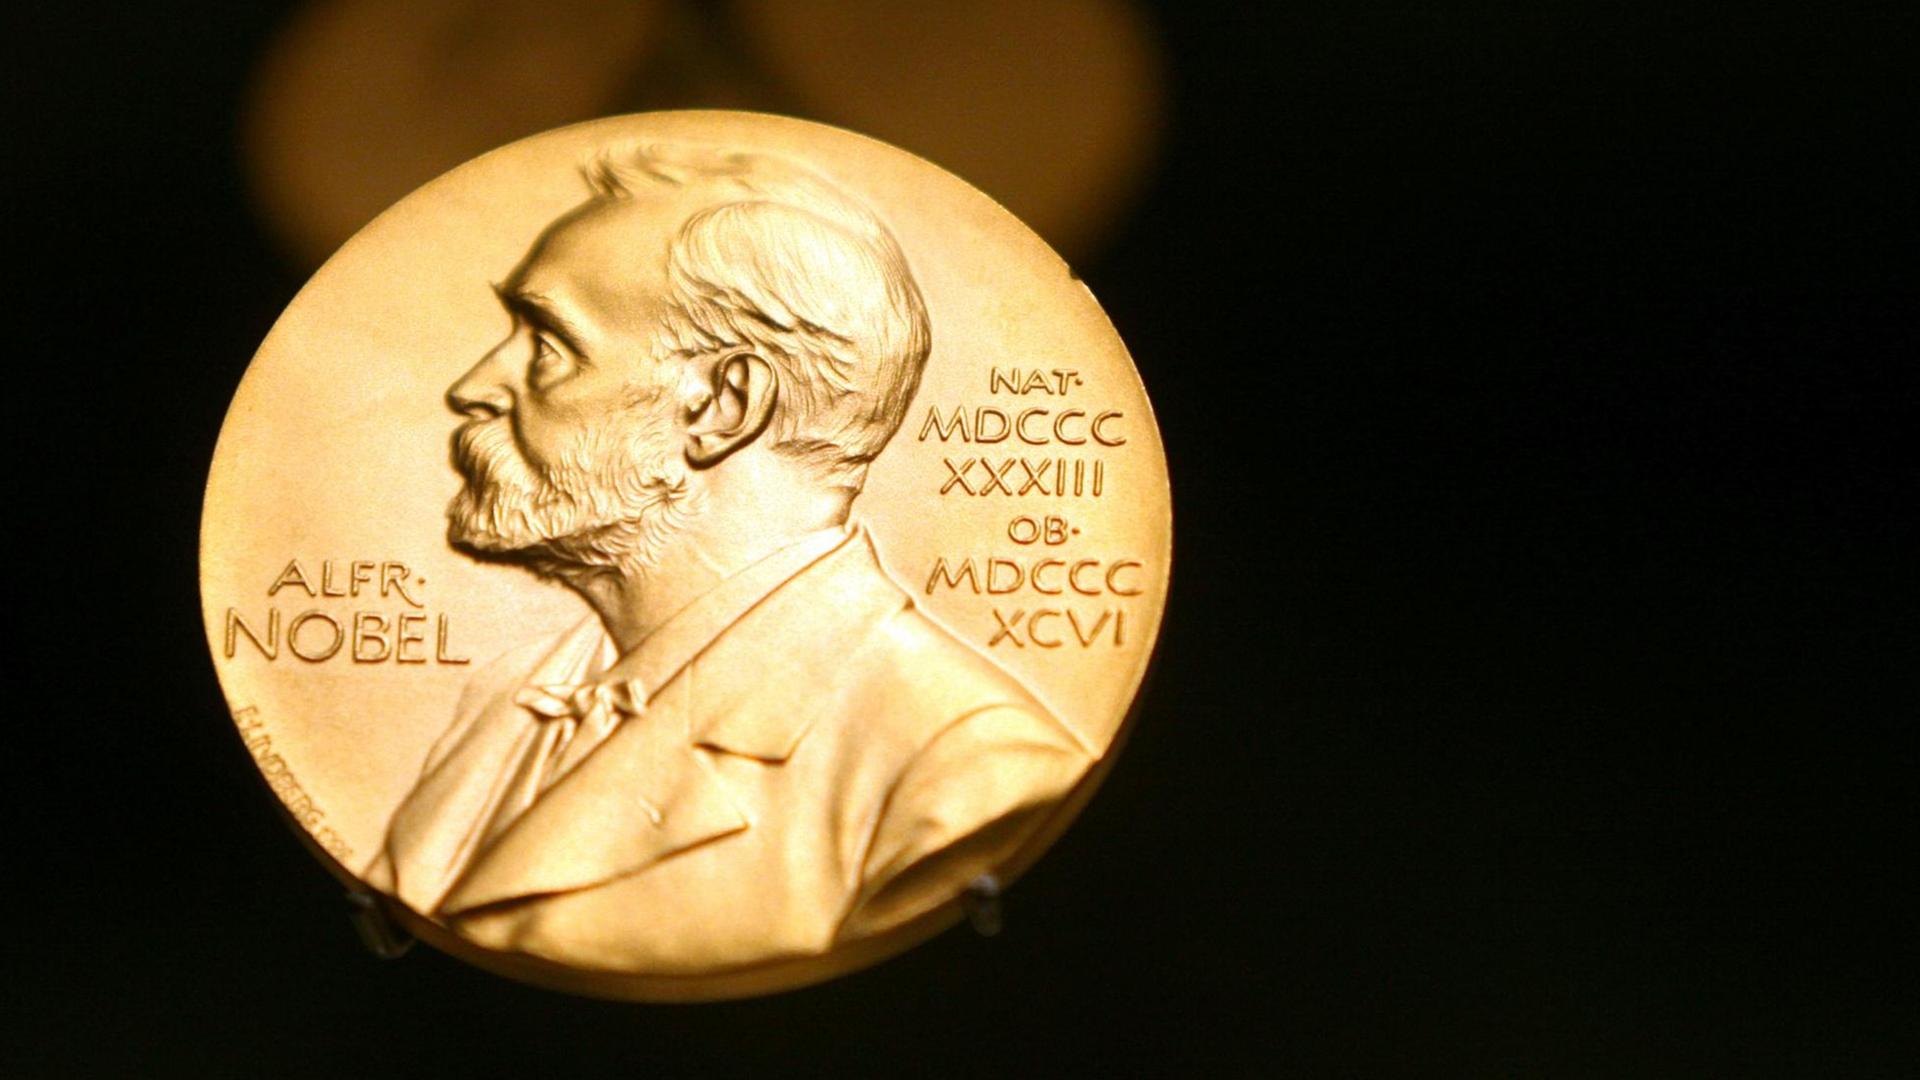 Eine Medaille mit dem Konterfei von Alfred Nobel.